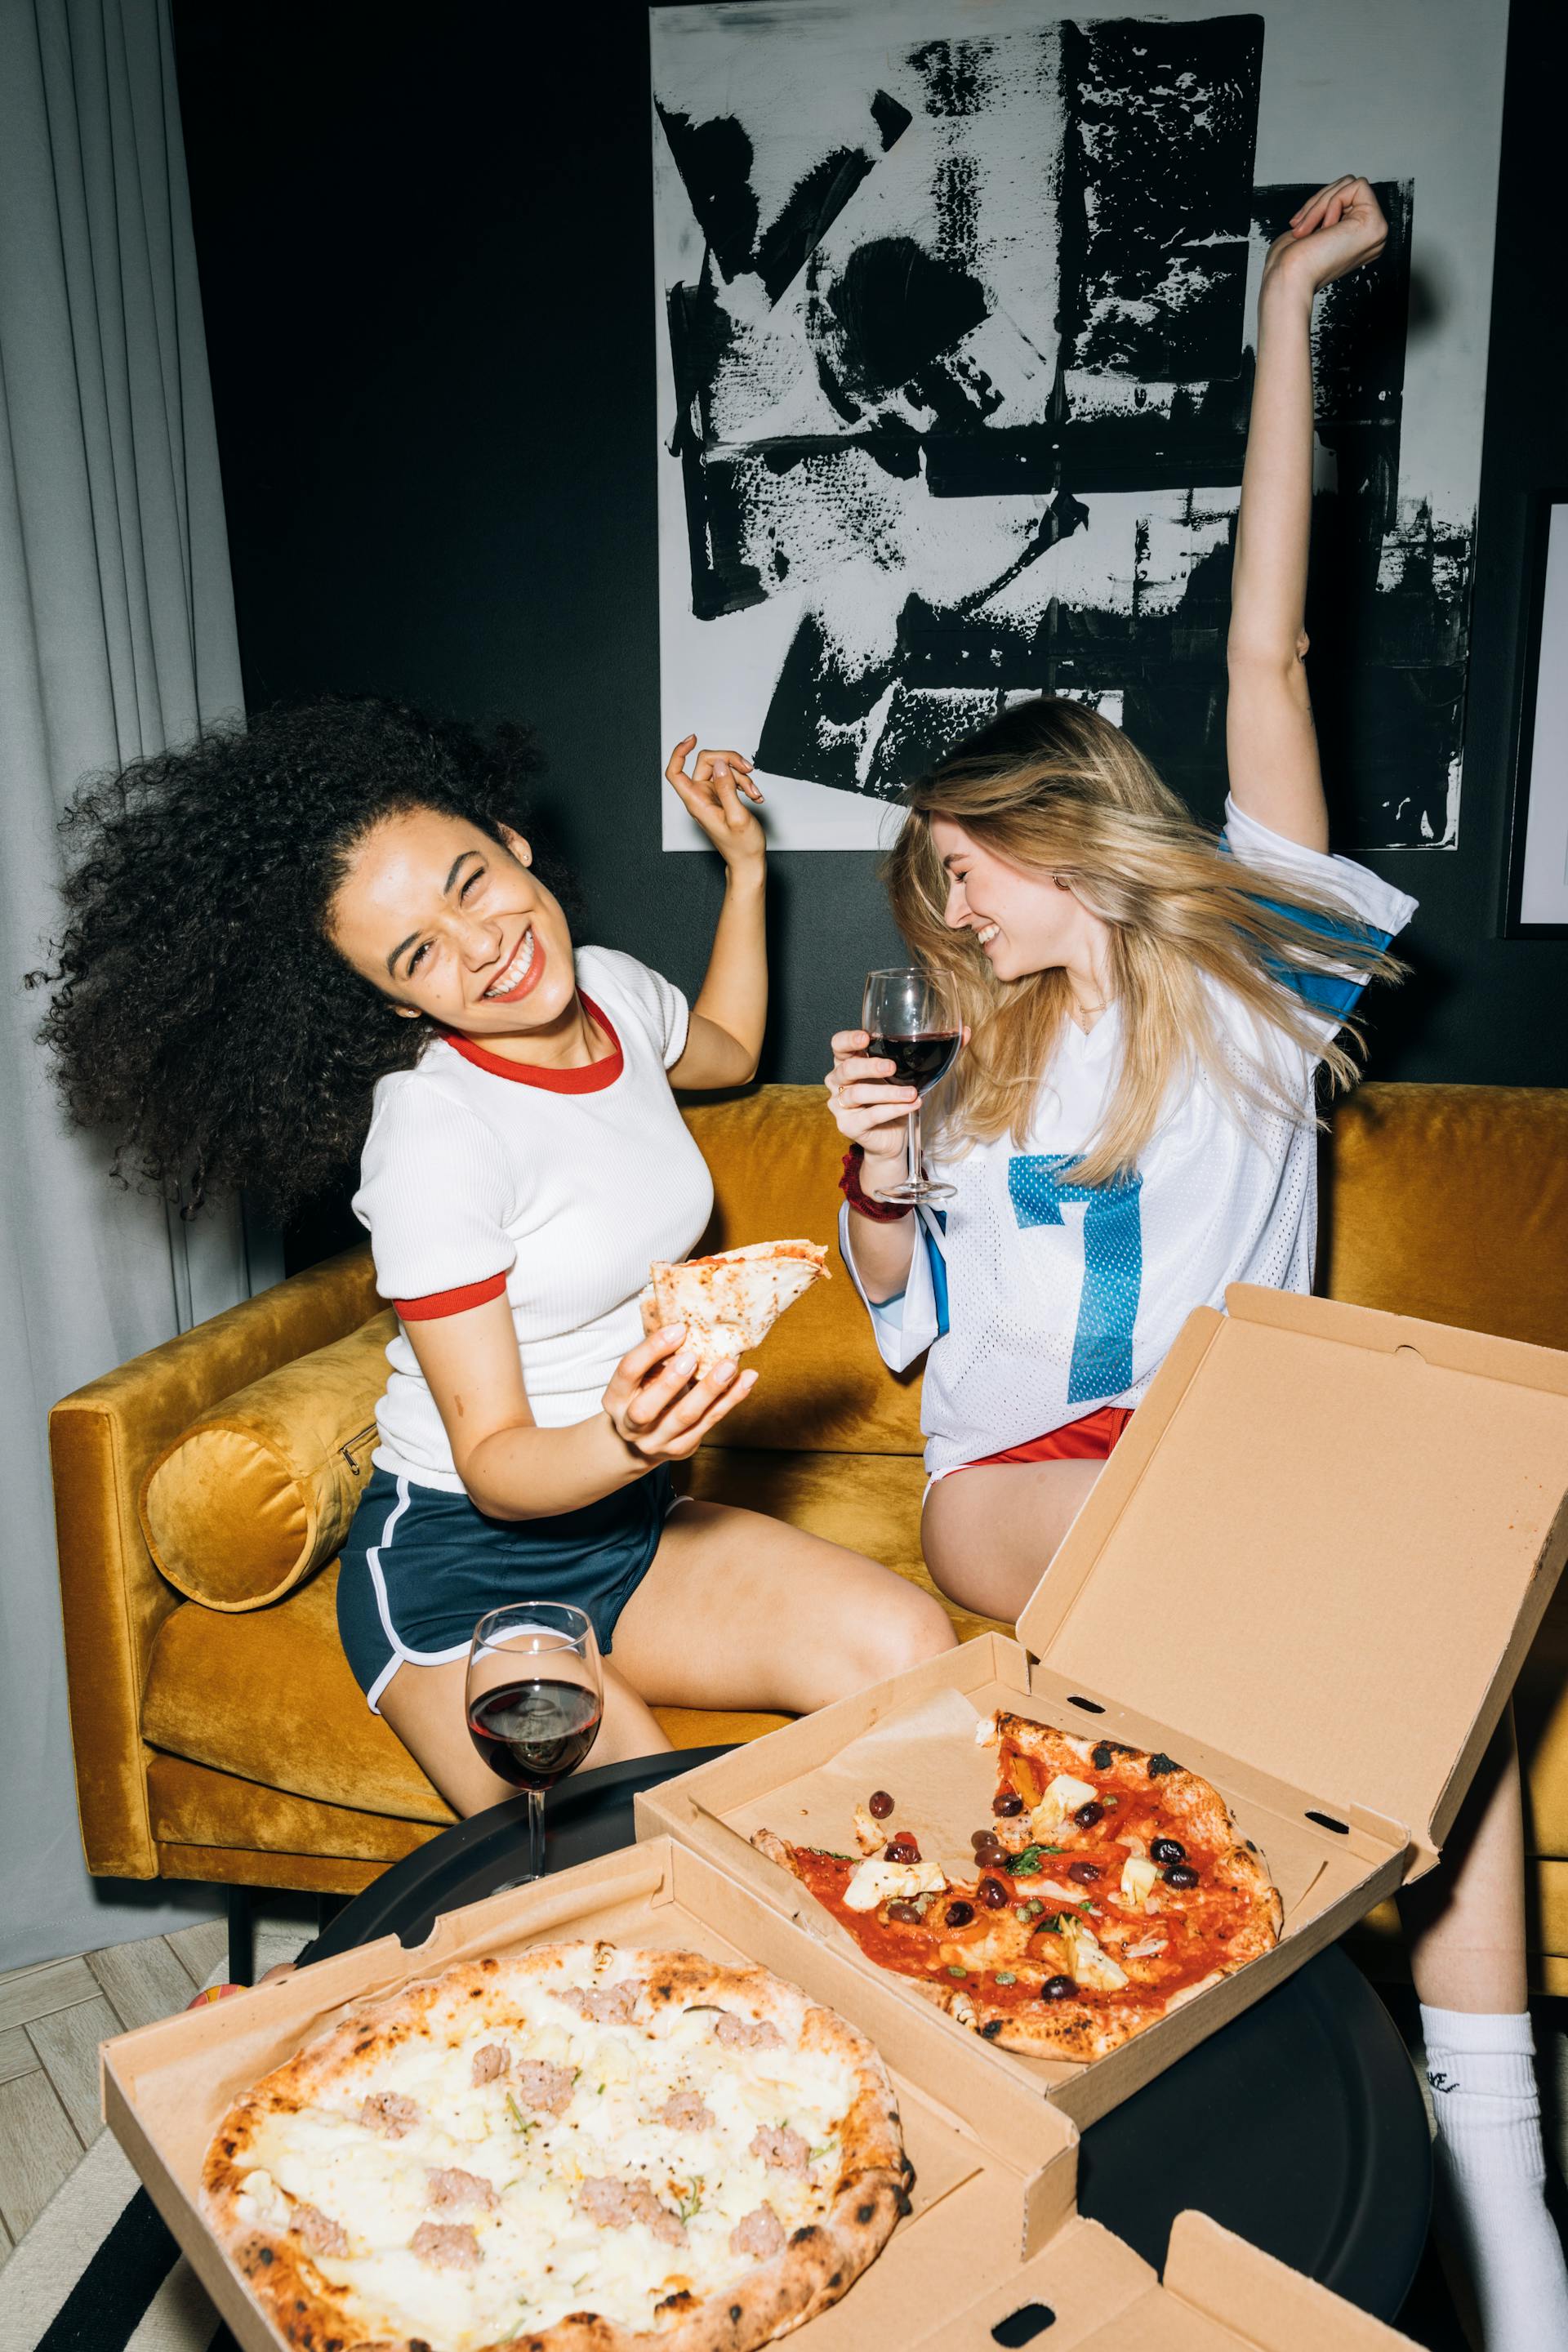 Two young women having fun | Source: Pexels